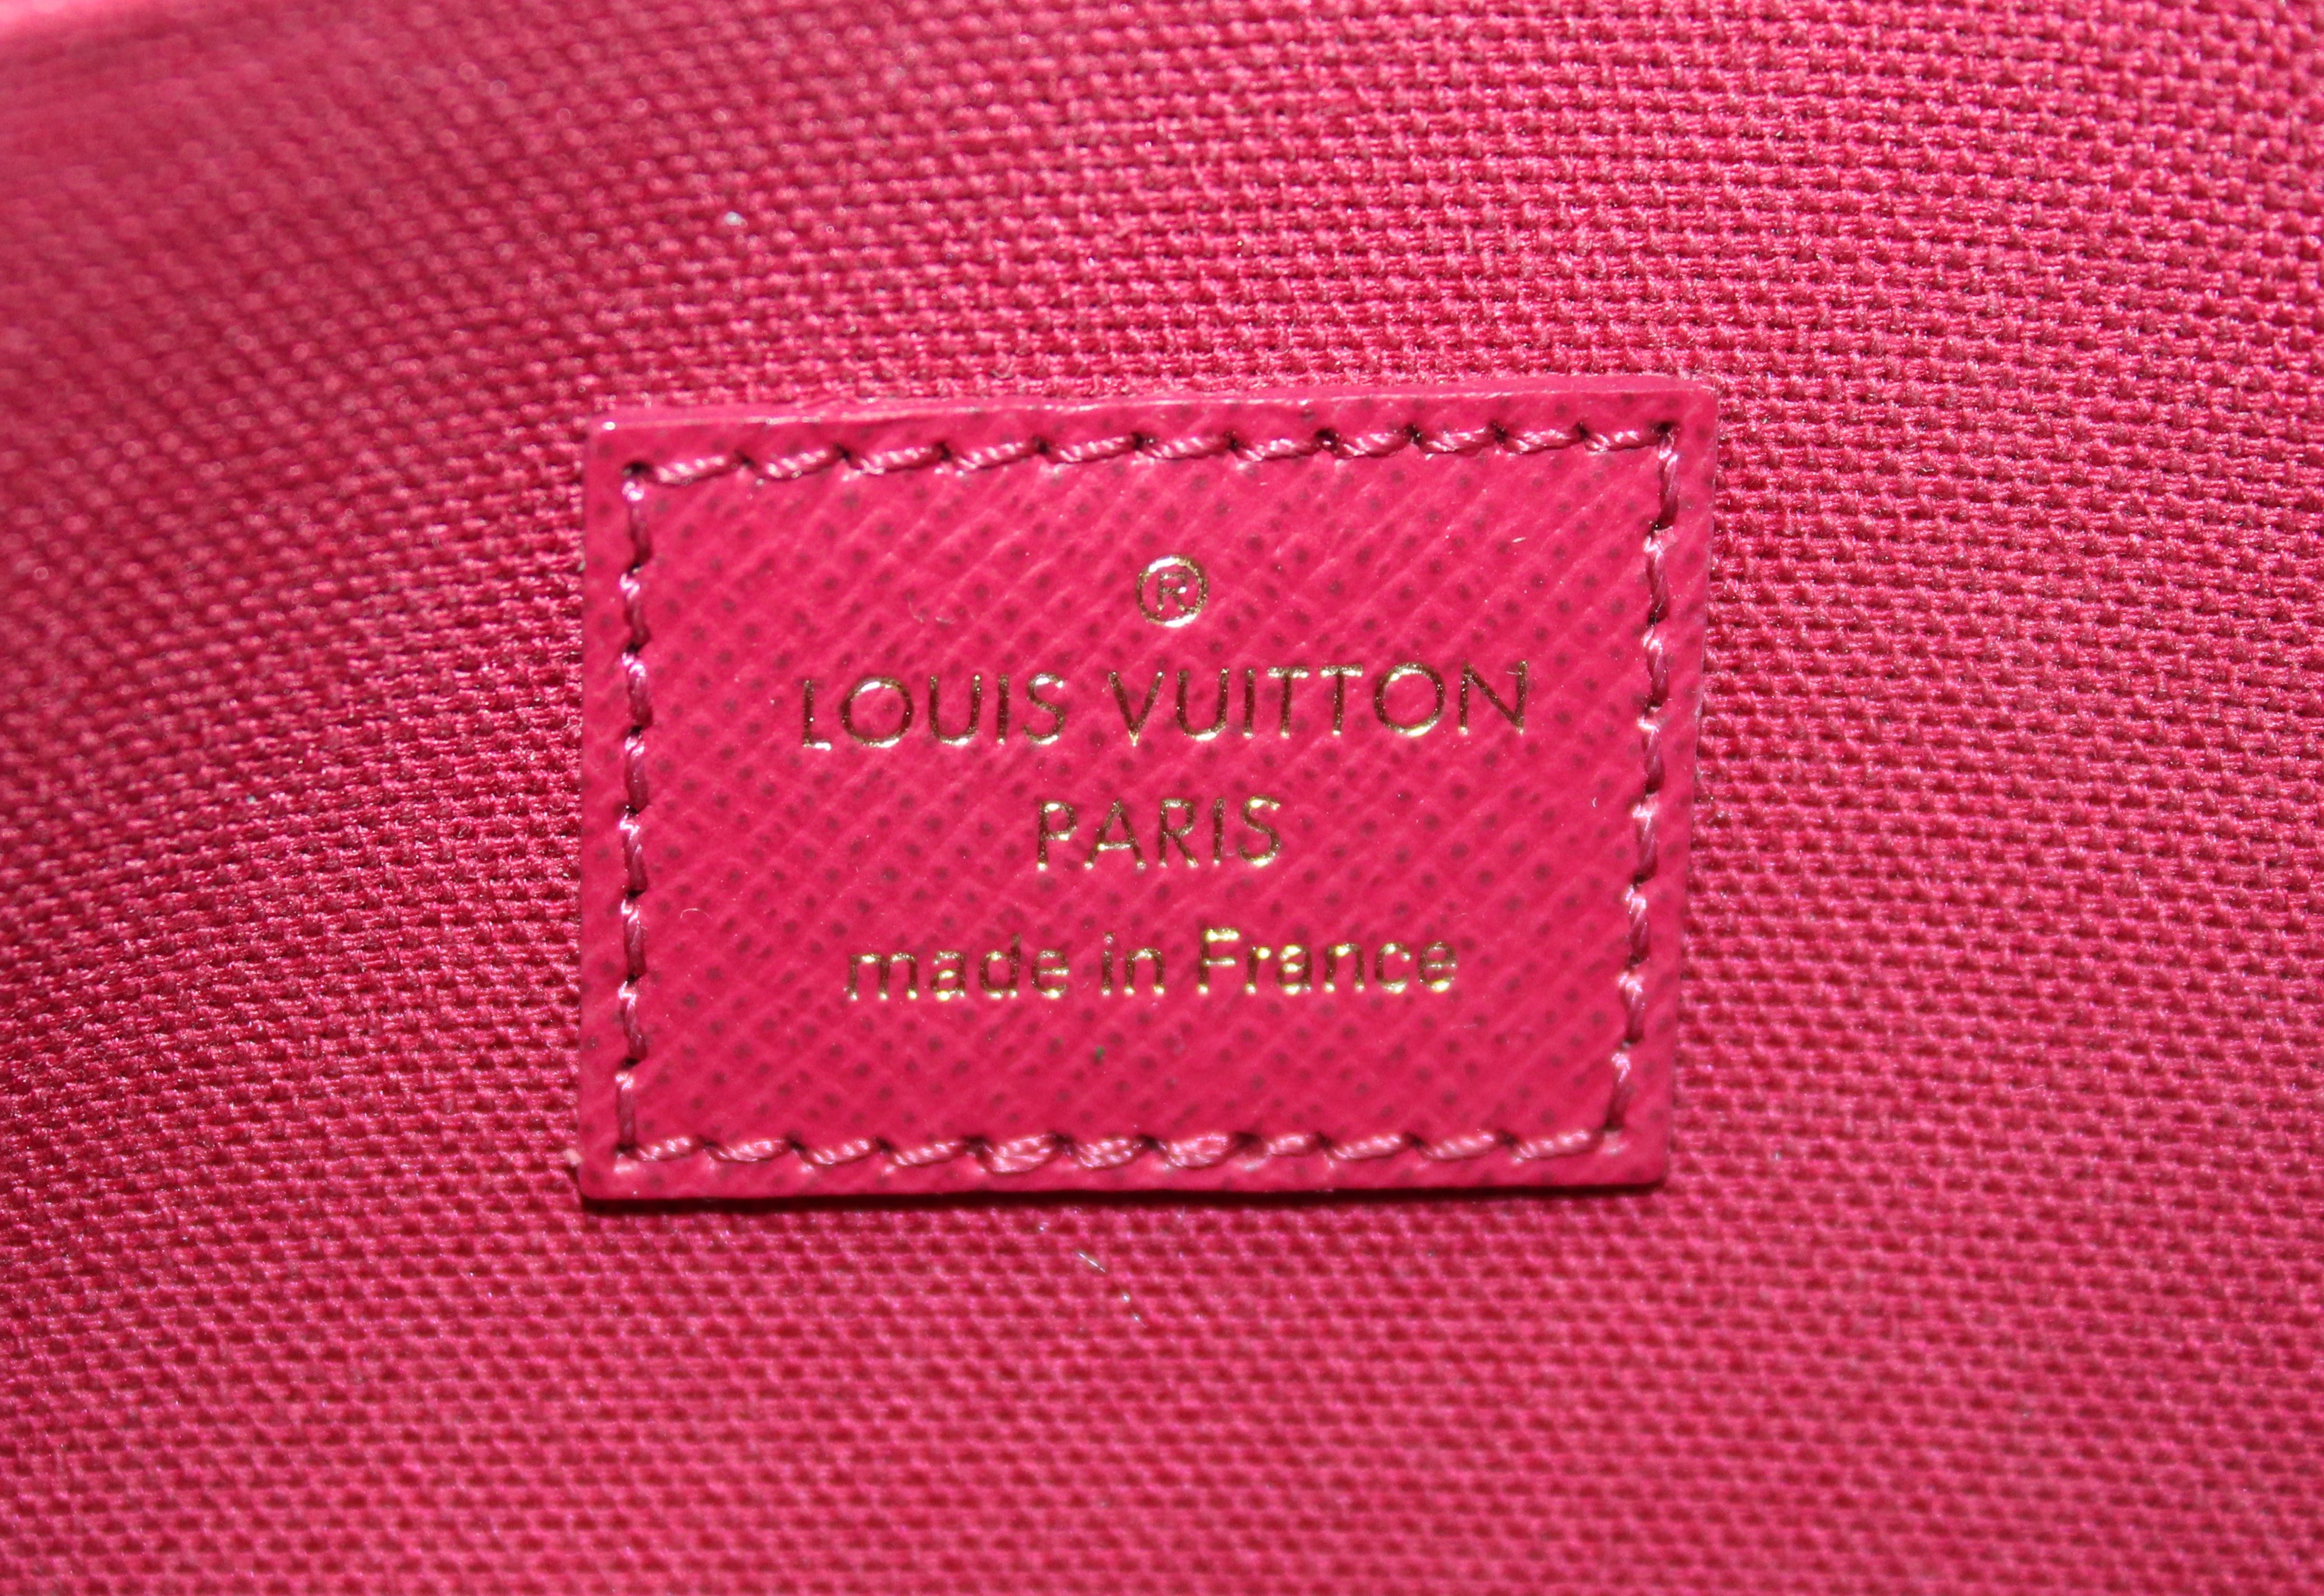 Authentic Louis Vuitton Classic Monogram Felicie Pochette Bag